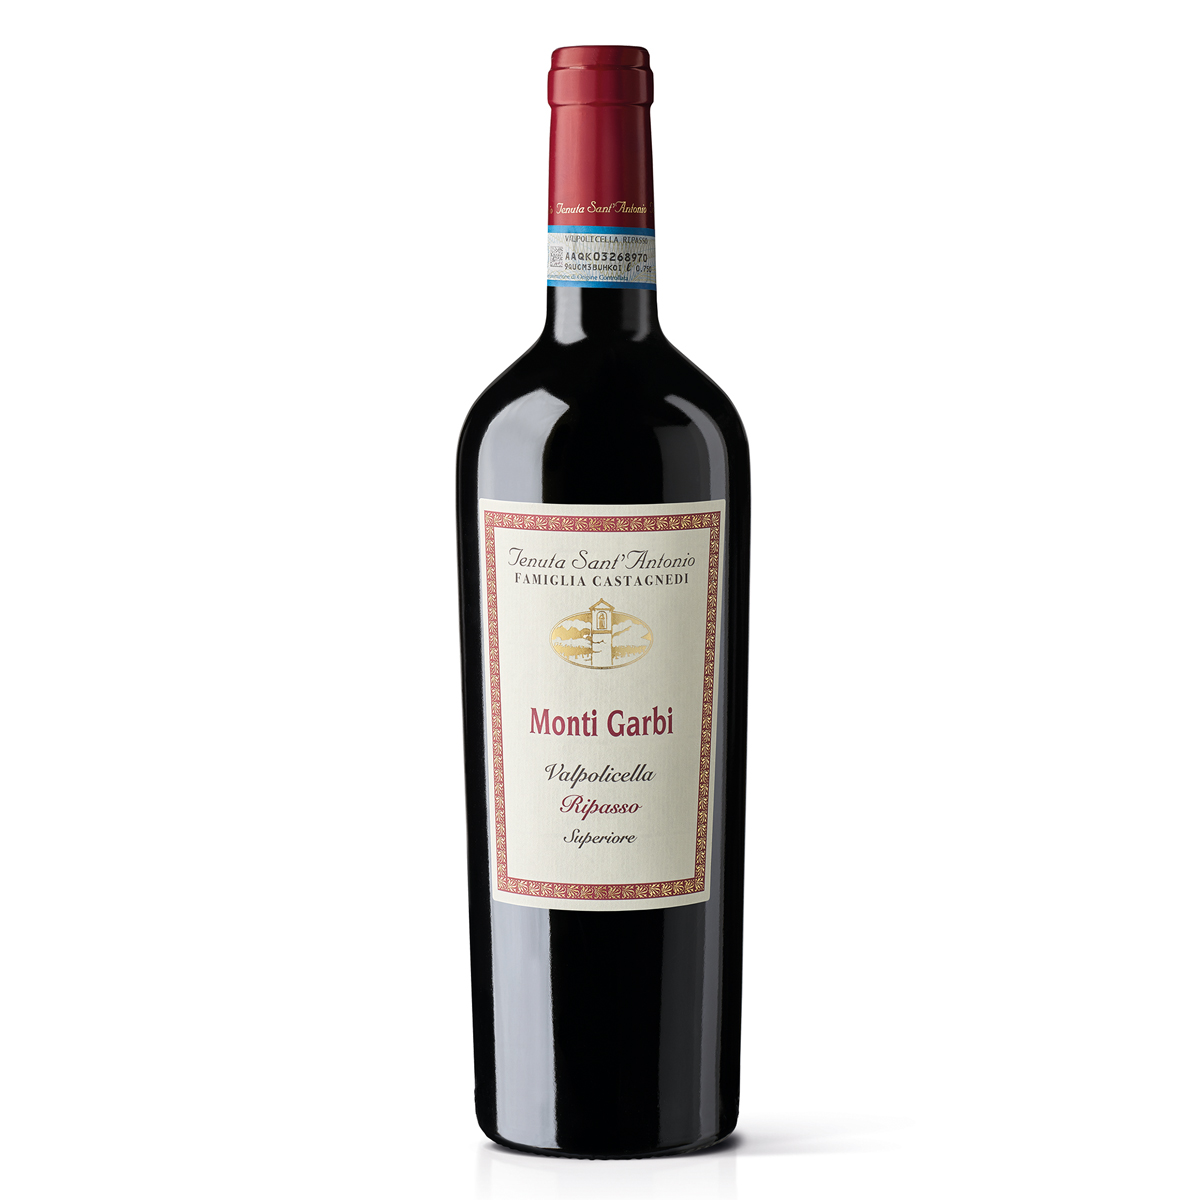 意大利瓦波利塞拉蒙蒂·加尔比红葡萄酒红酒